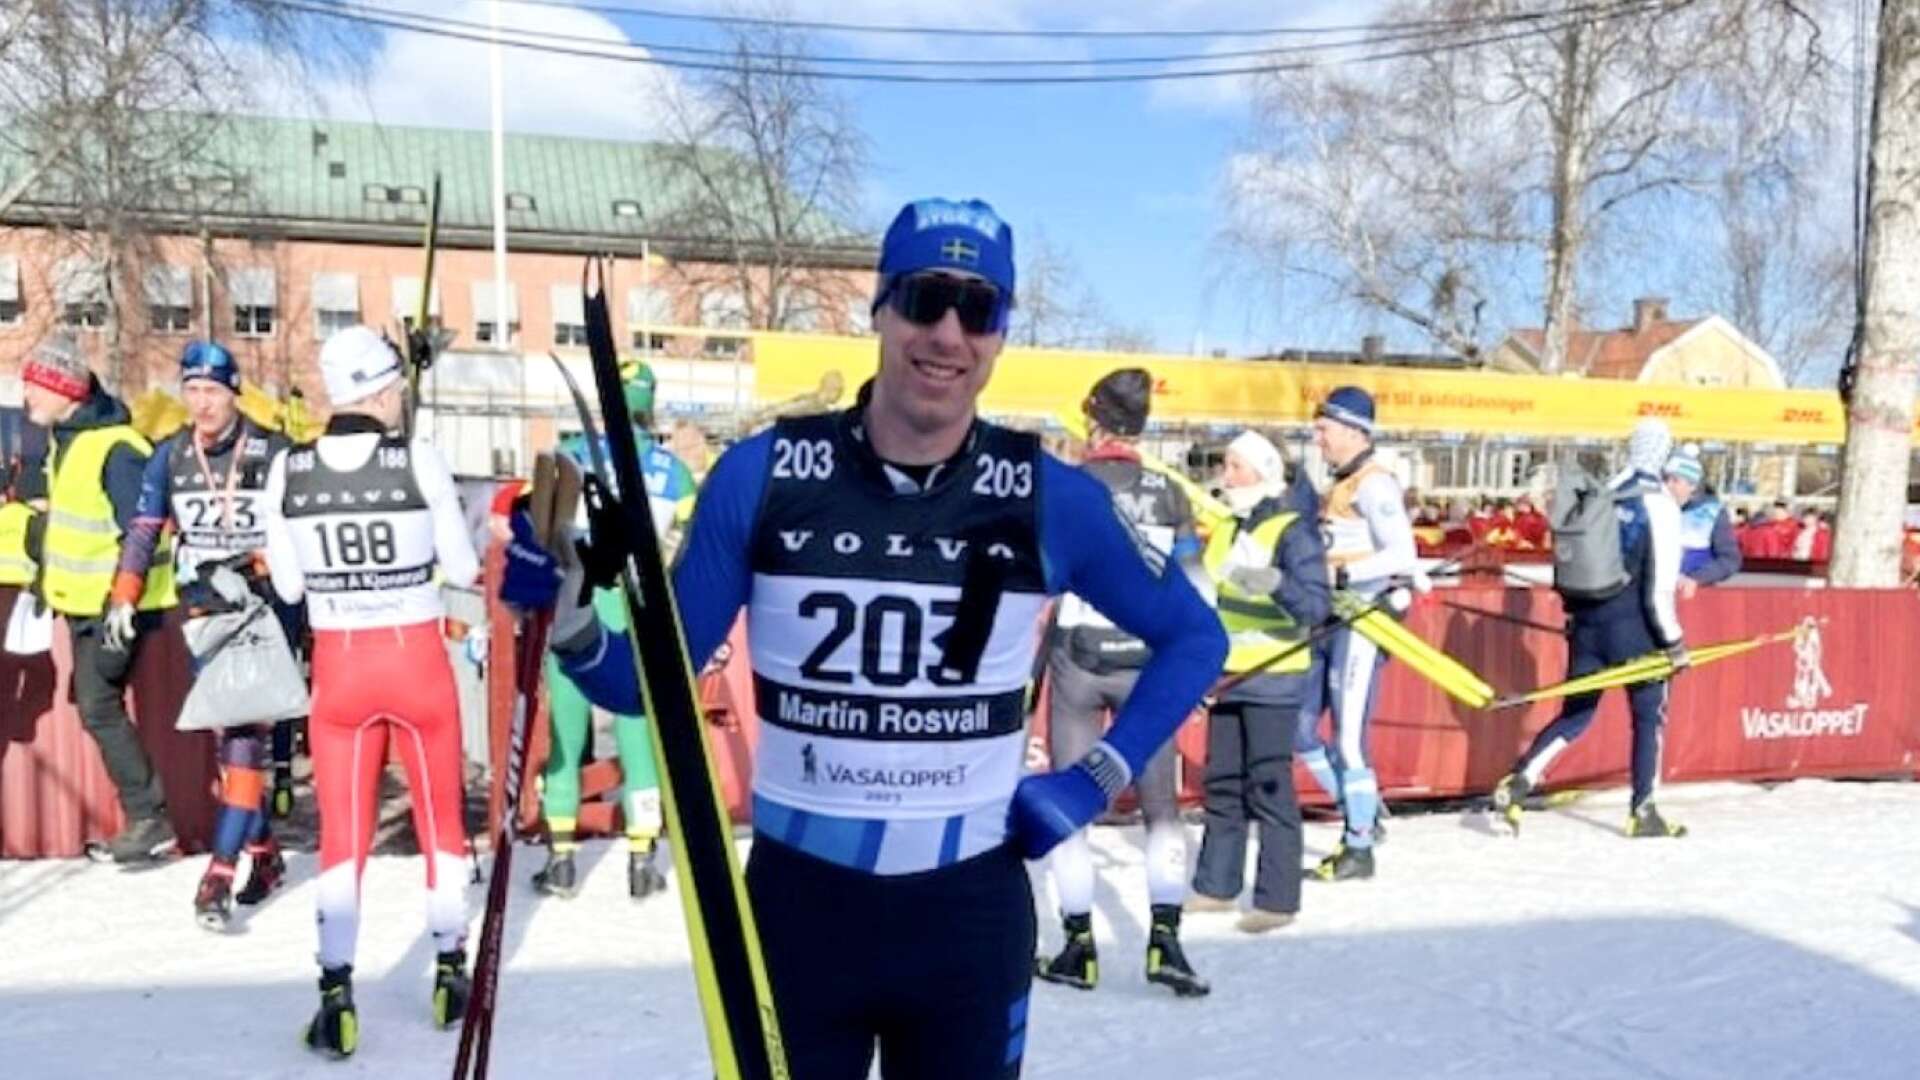 Martin Rosvall från Arvika var med och vann Stafettvasan i fredags och slog sig in bland de 200 bästa i Vasaloppet.